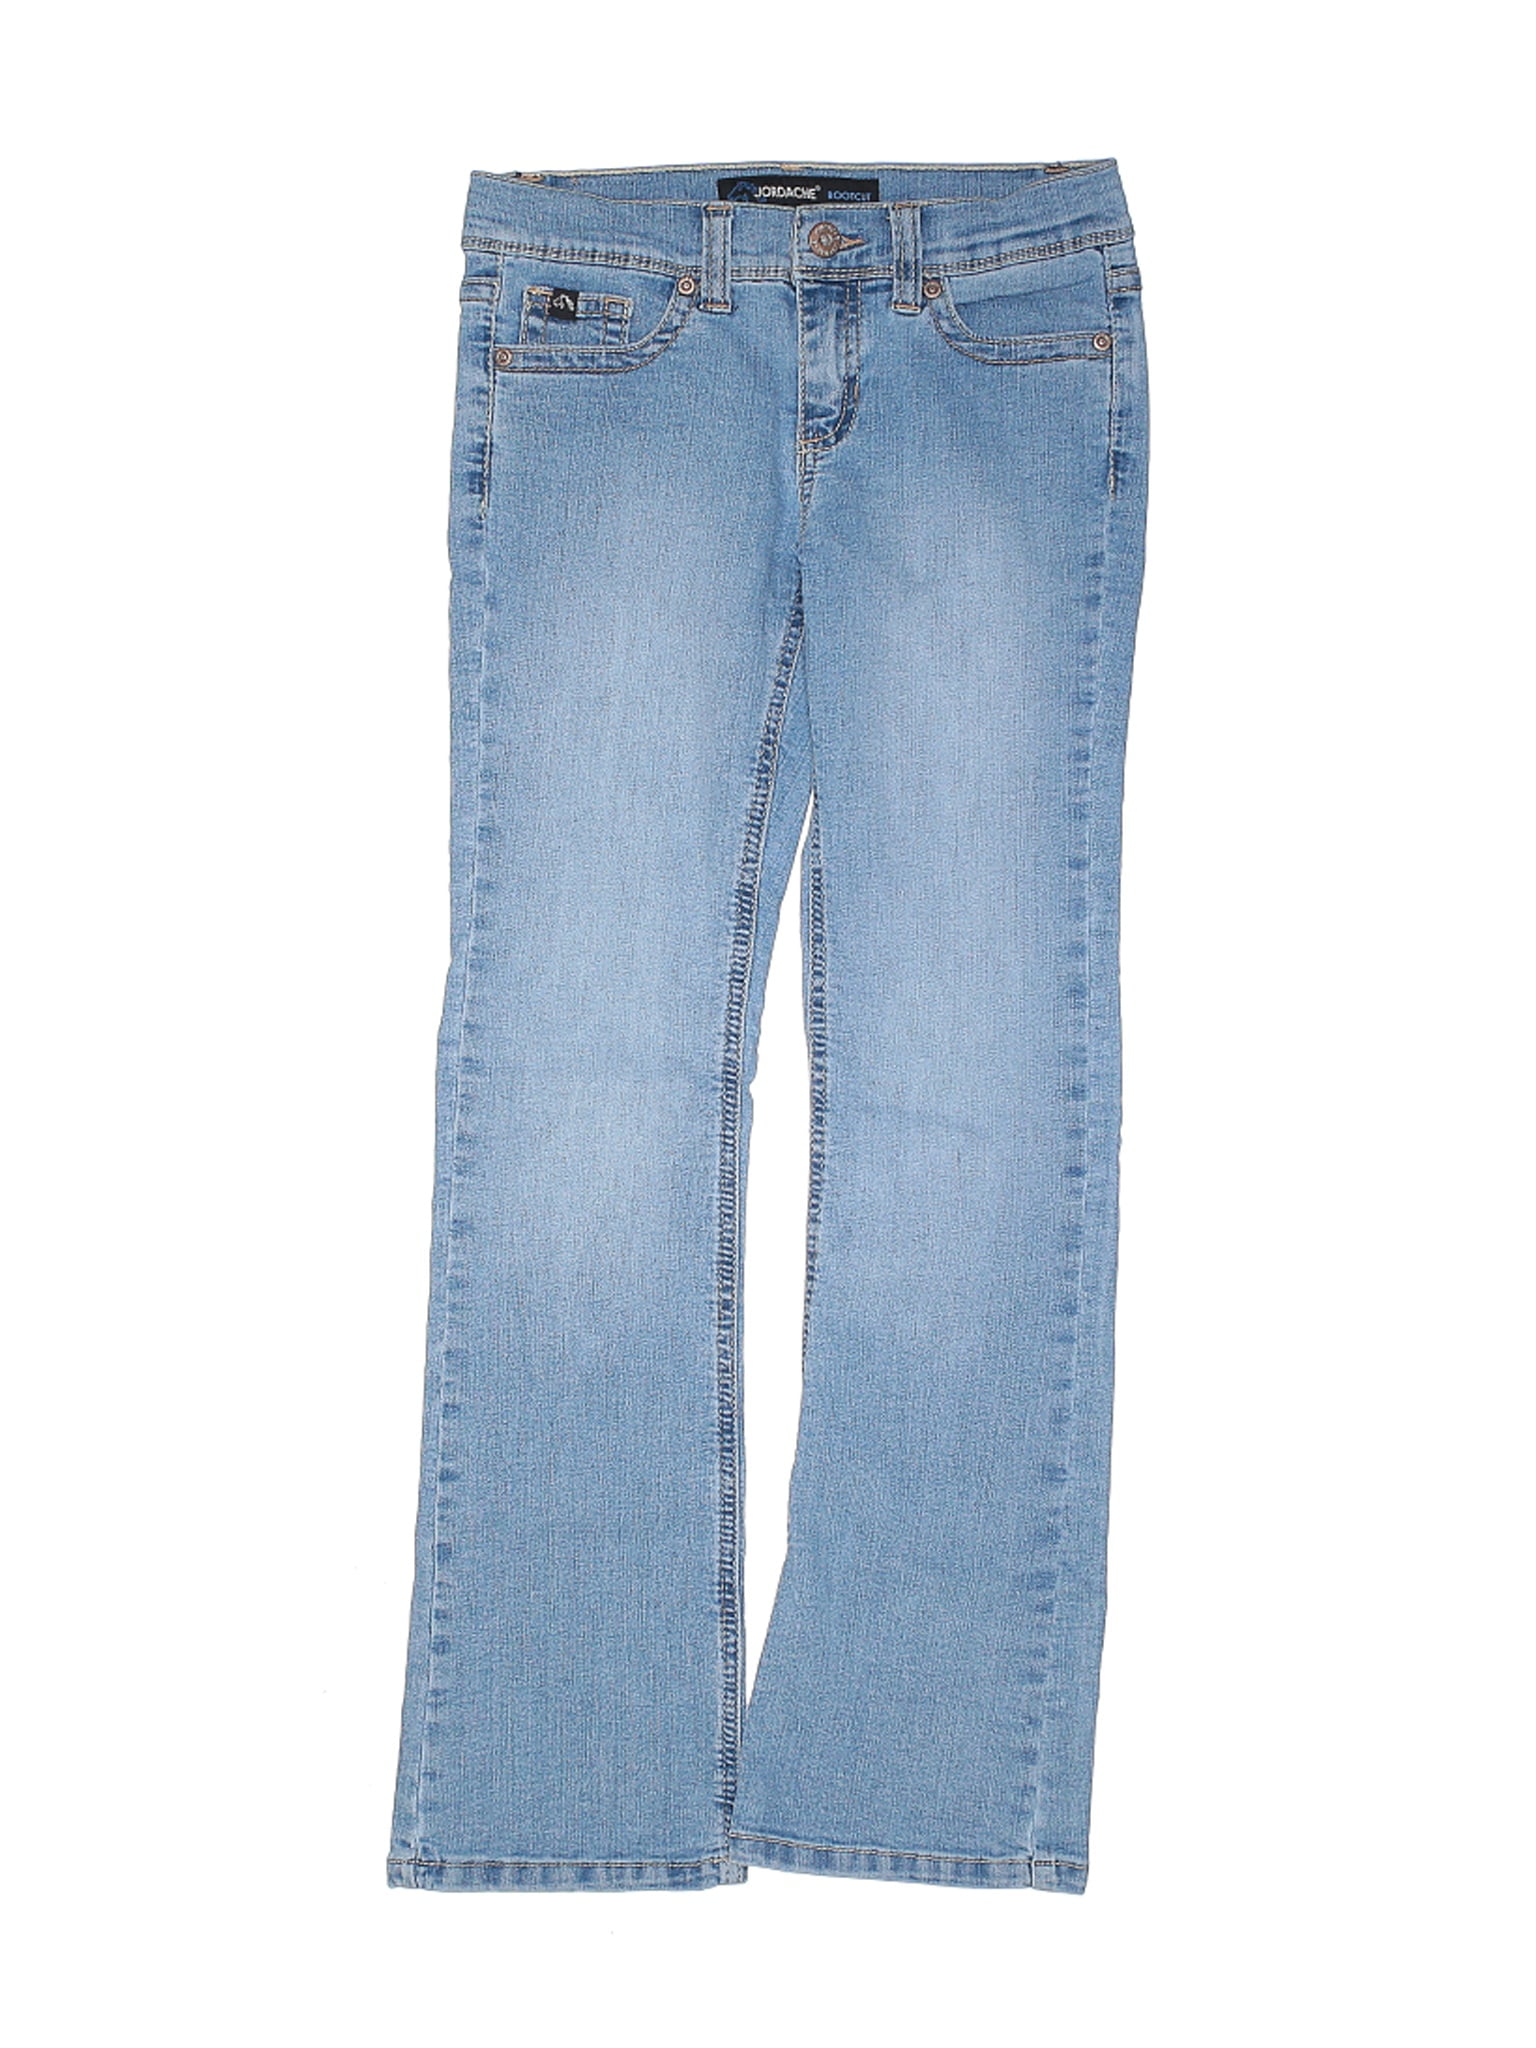 jordache jeans walmart